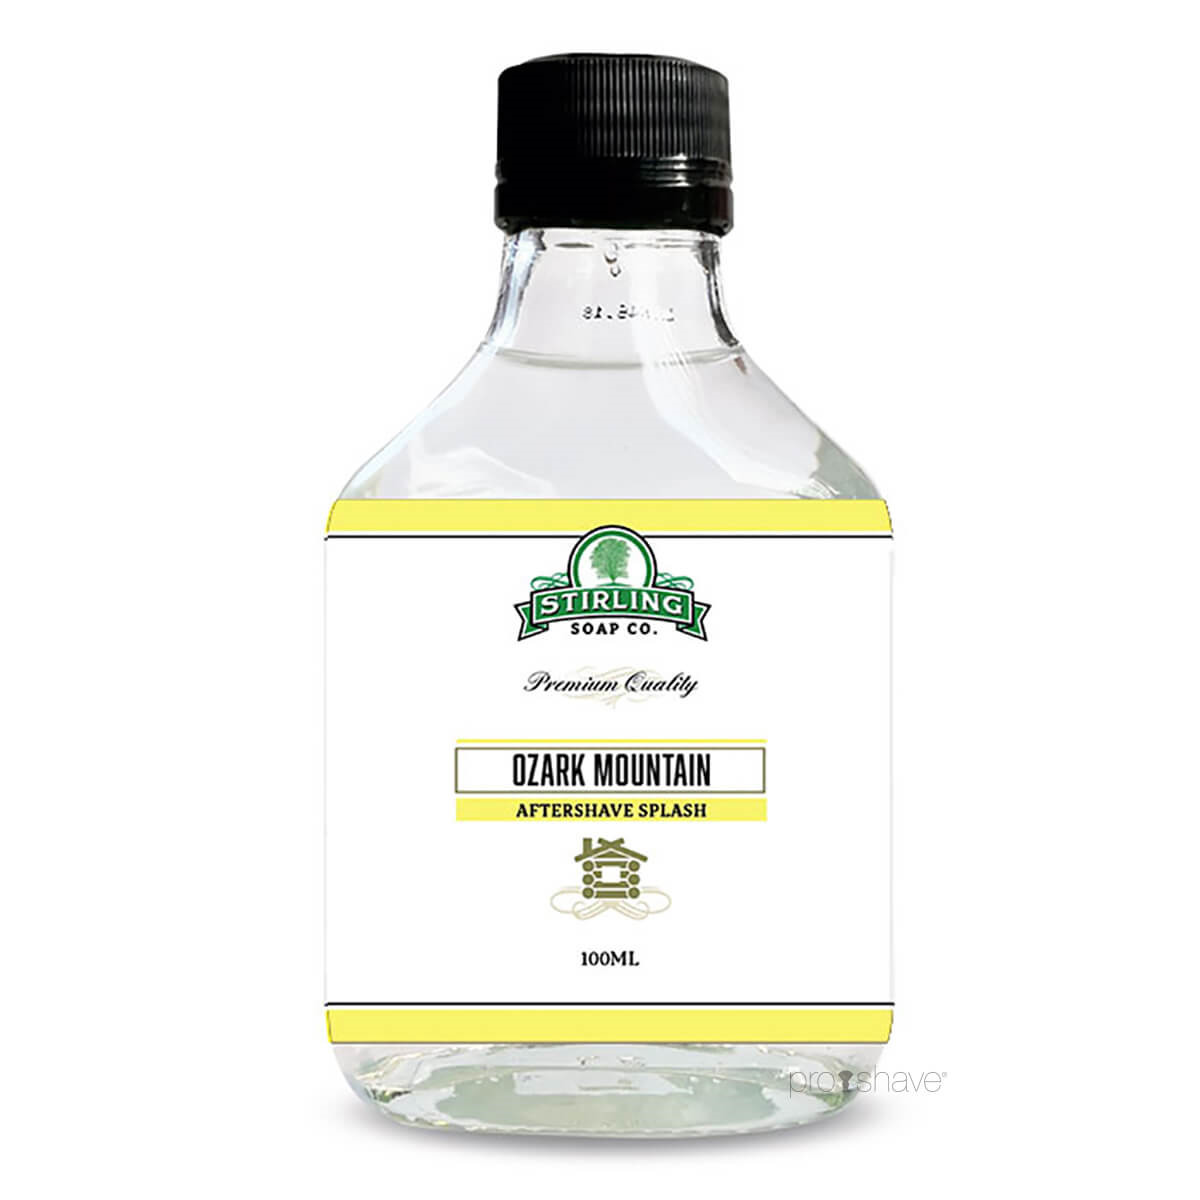 Stirling Soap Co. Aftershave Splash, Ozark Mountain, 100 ml.